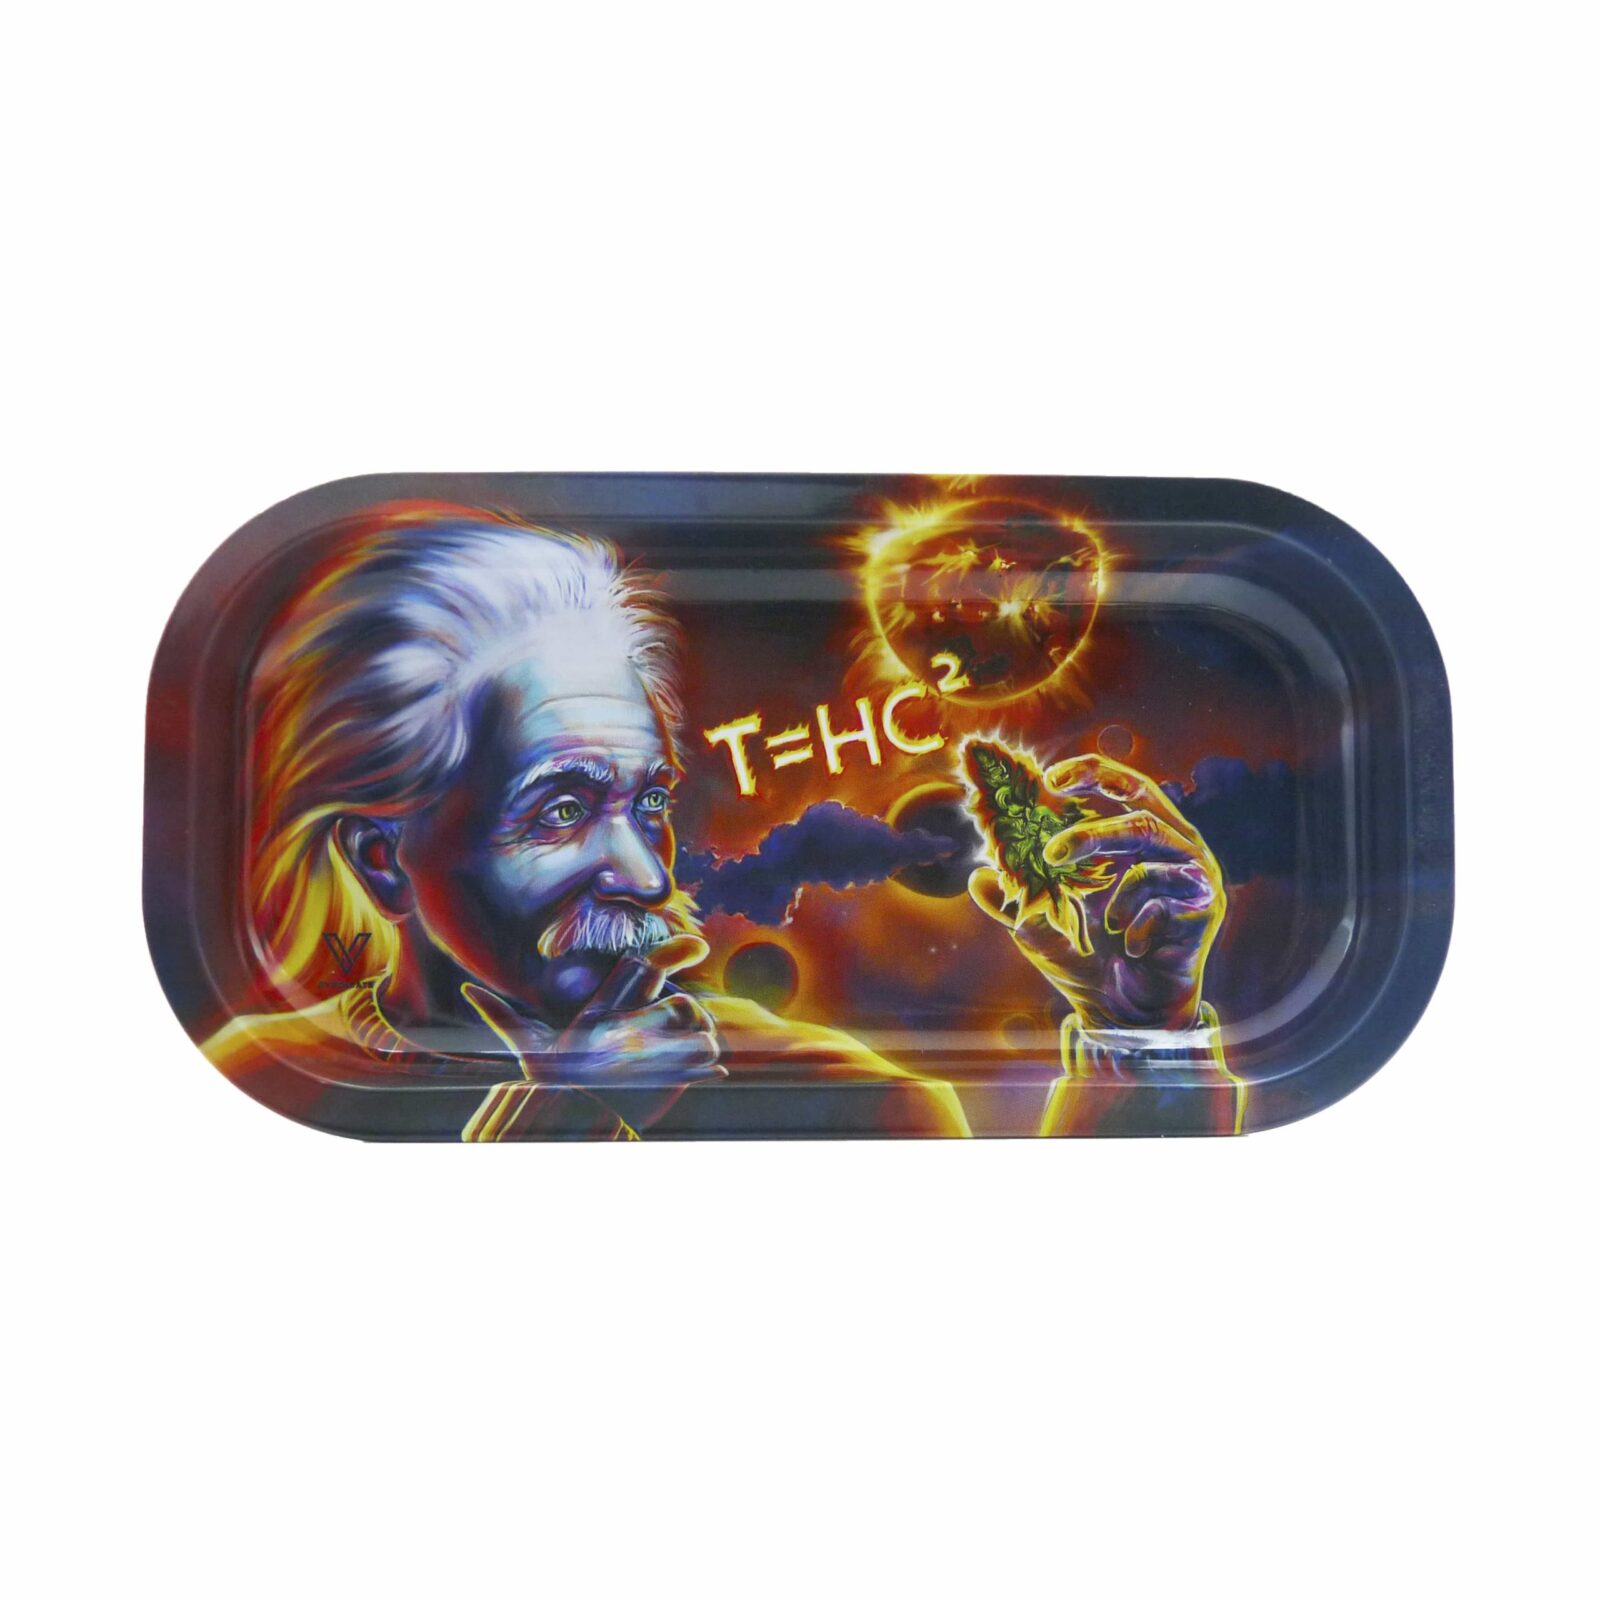 T=HC2 Einstein Solar Diesel Metal Rollin' Tray